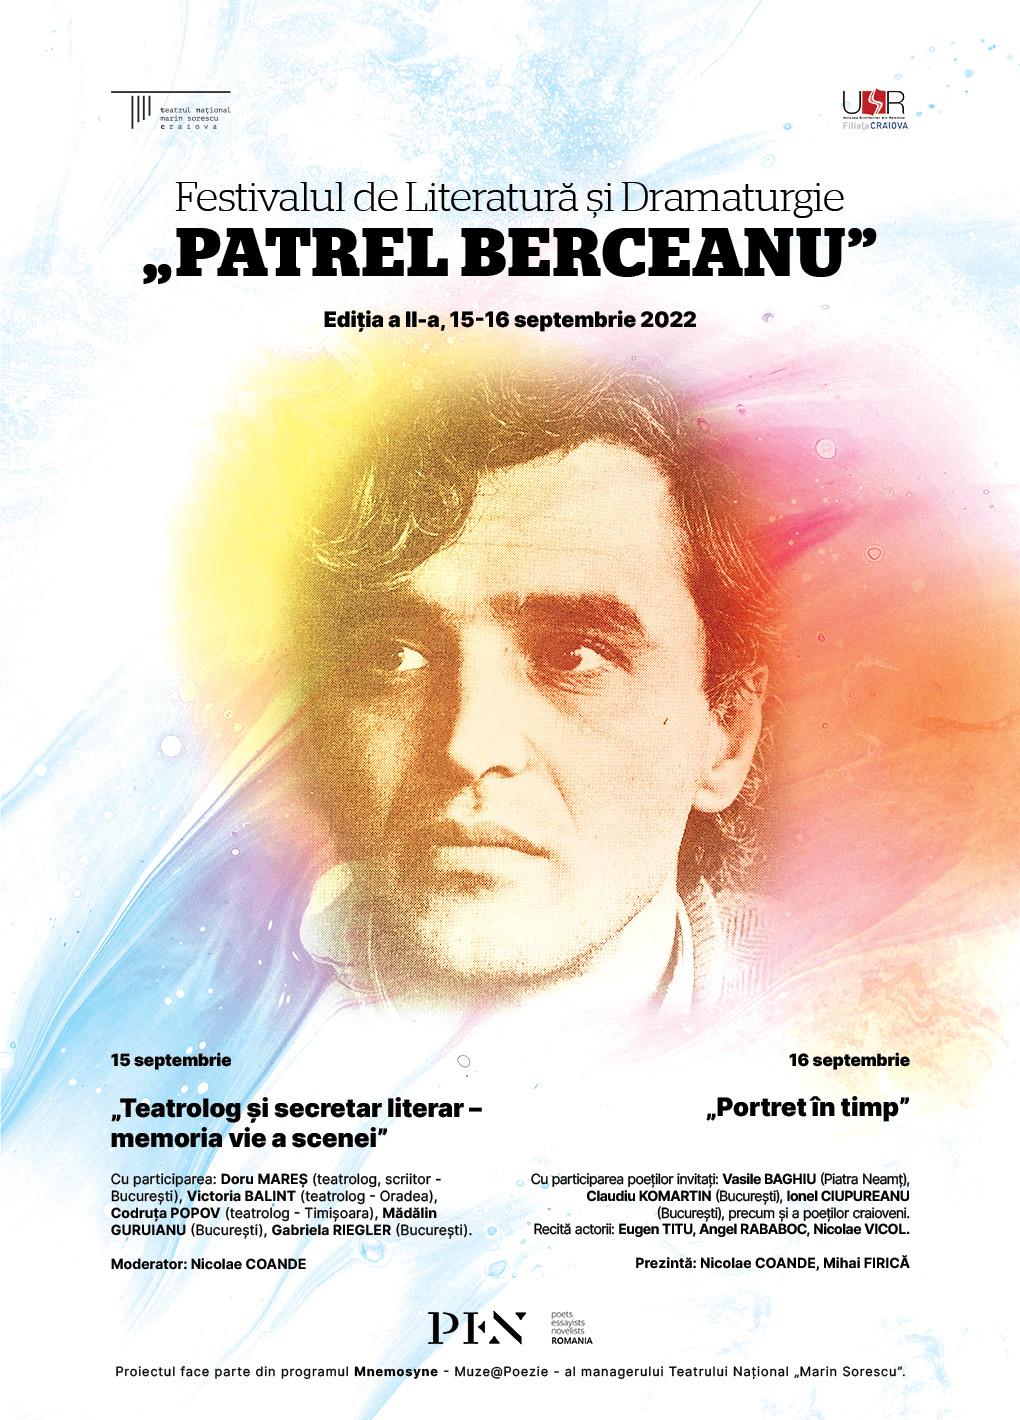 Programul Festivalul de literatură Patrel Berceanu – ediția a II-a, 2022, Craiova, 15-16 septembrie